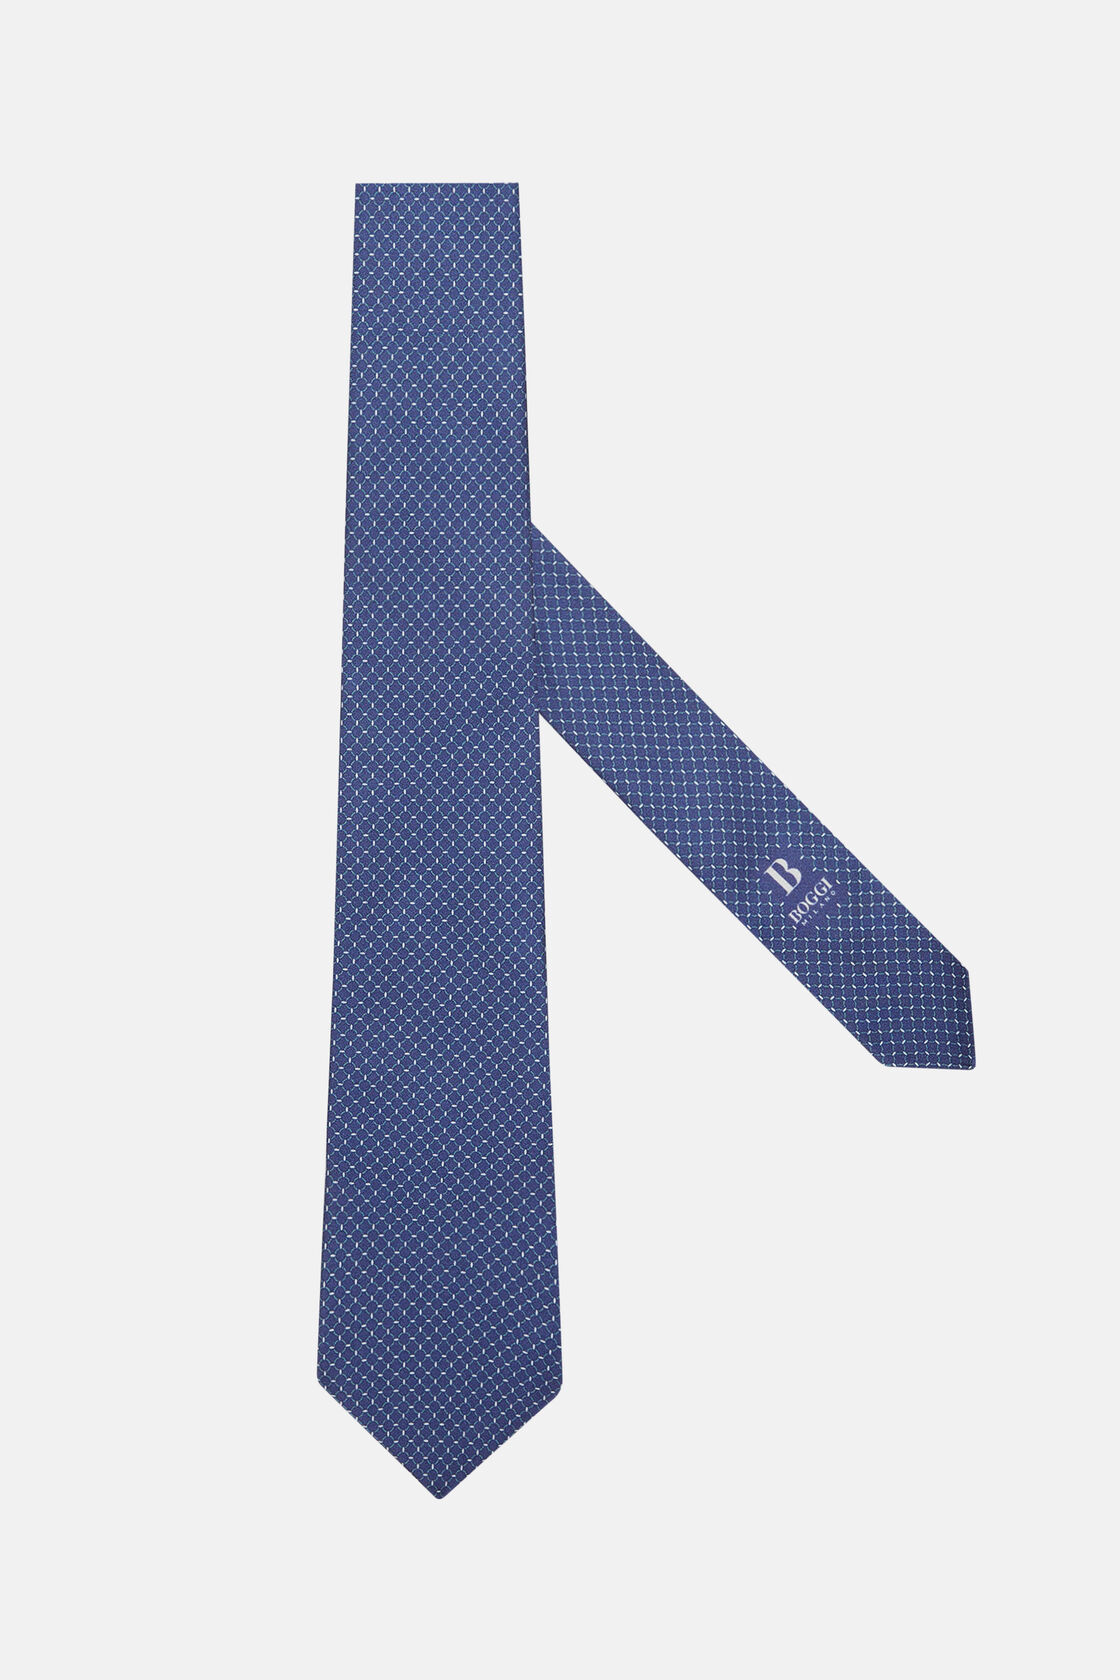 Μεταξωτή γραβάτα με μικρά σχέδια, Navy - Green, hi-res